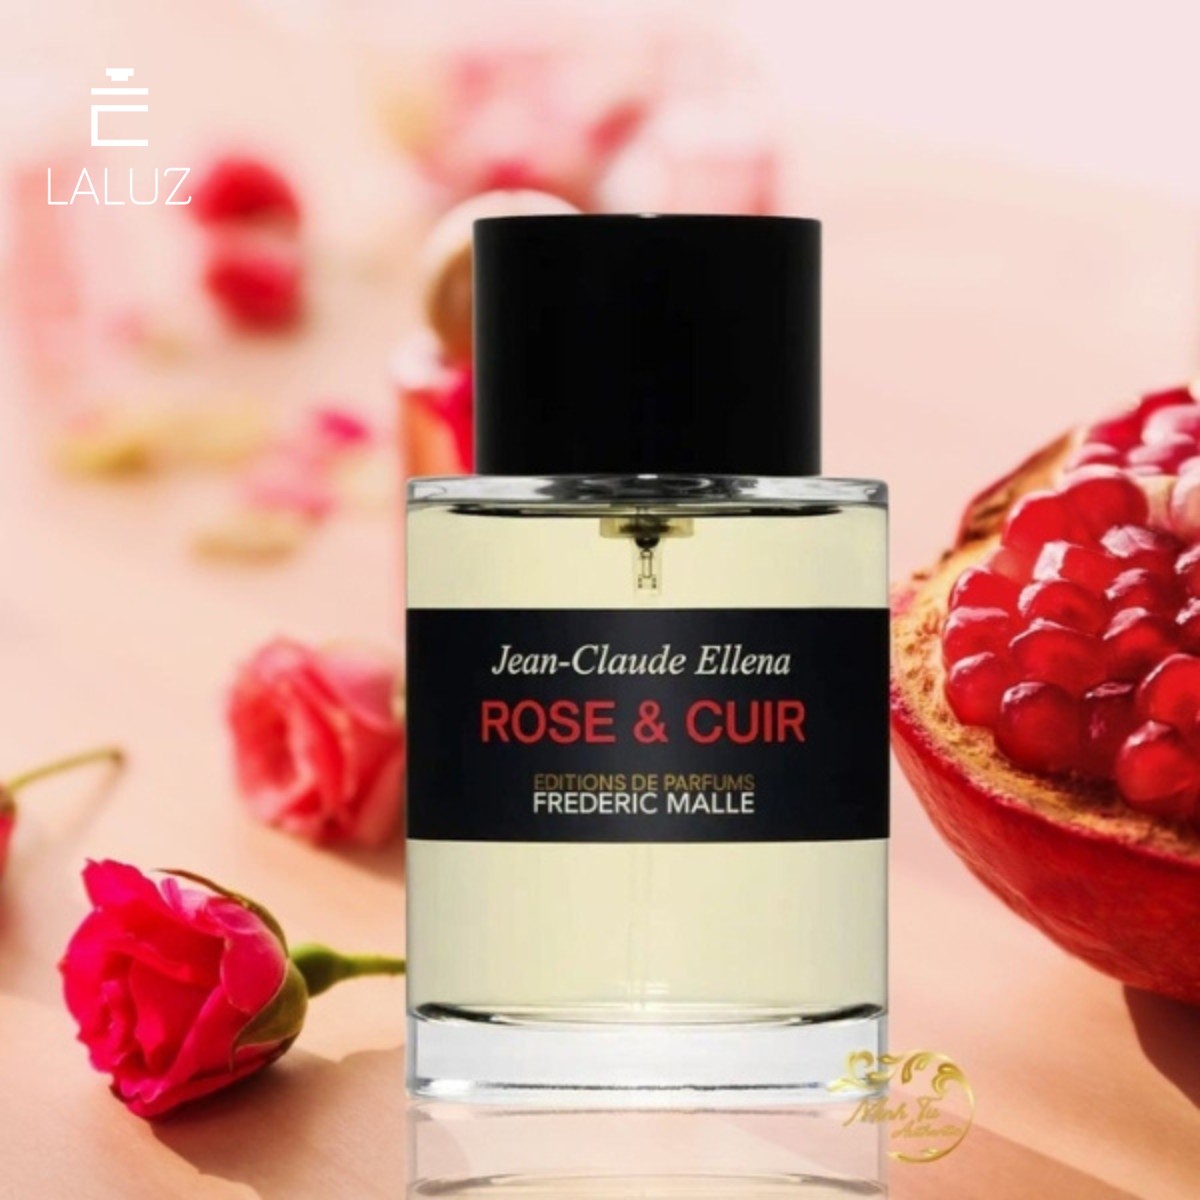 Nước hoa Frederic Malle Rose & Cuir đem đến hương thơm vô cùng tinh tế